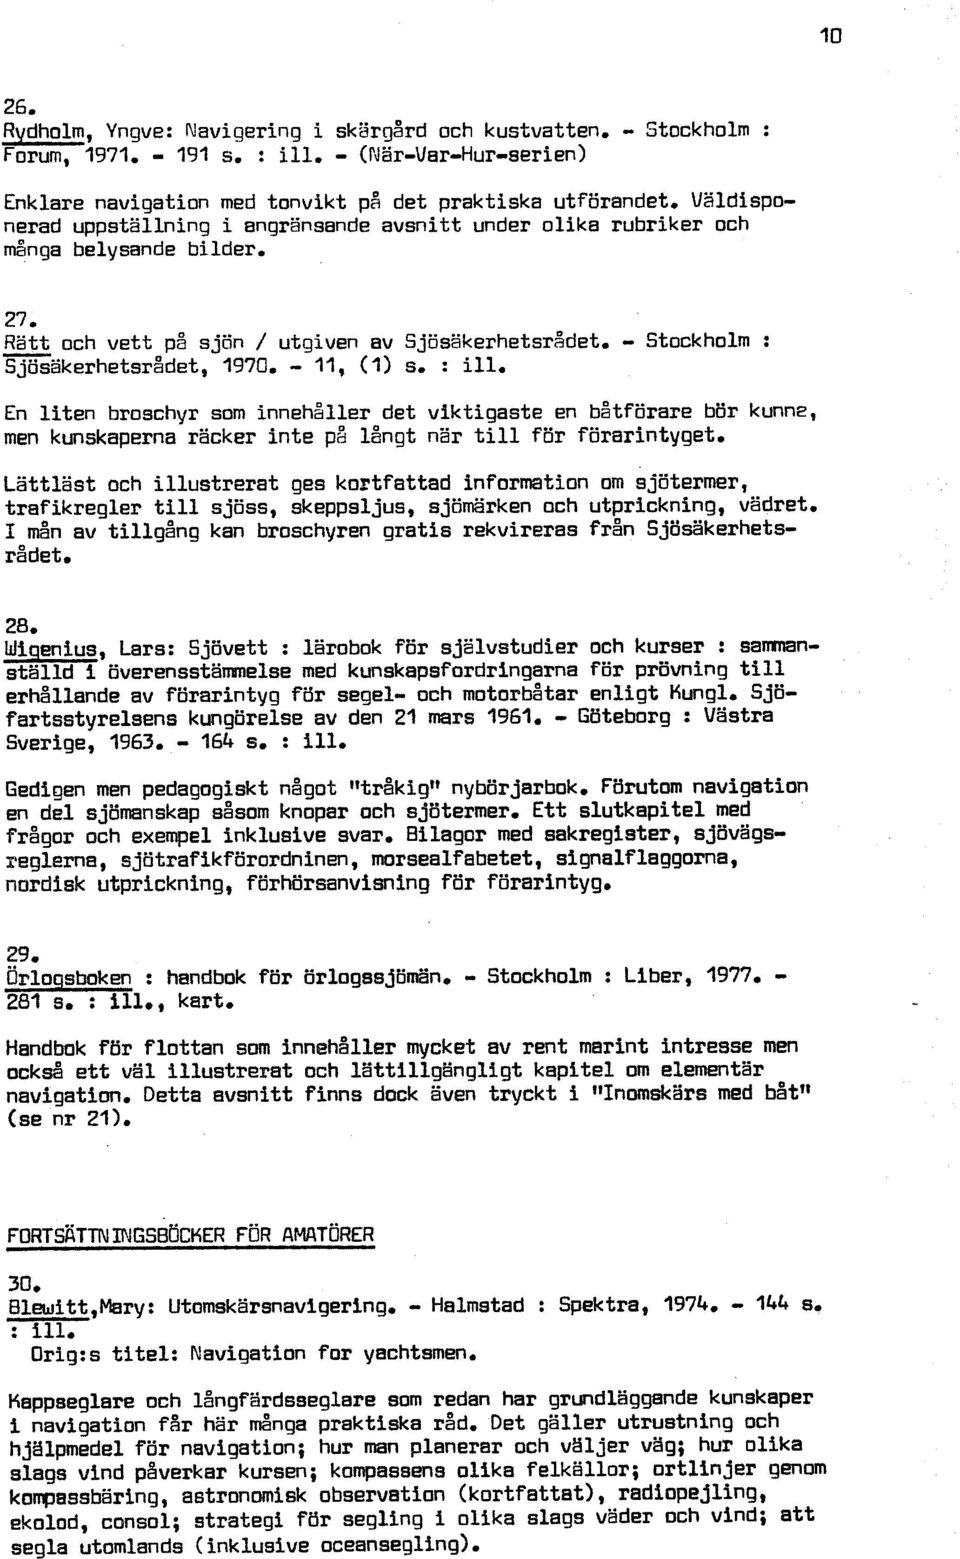 - 27 Ratt och vett på sjon / utgiven av ~jösäkerhetsr8det, - Stockholm : Sjösakerhetsrådet, 1970, - 11, (I) s, : ill.